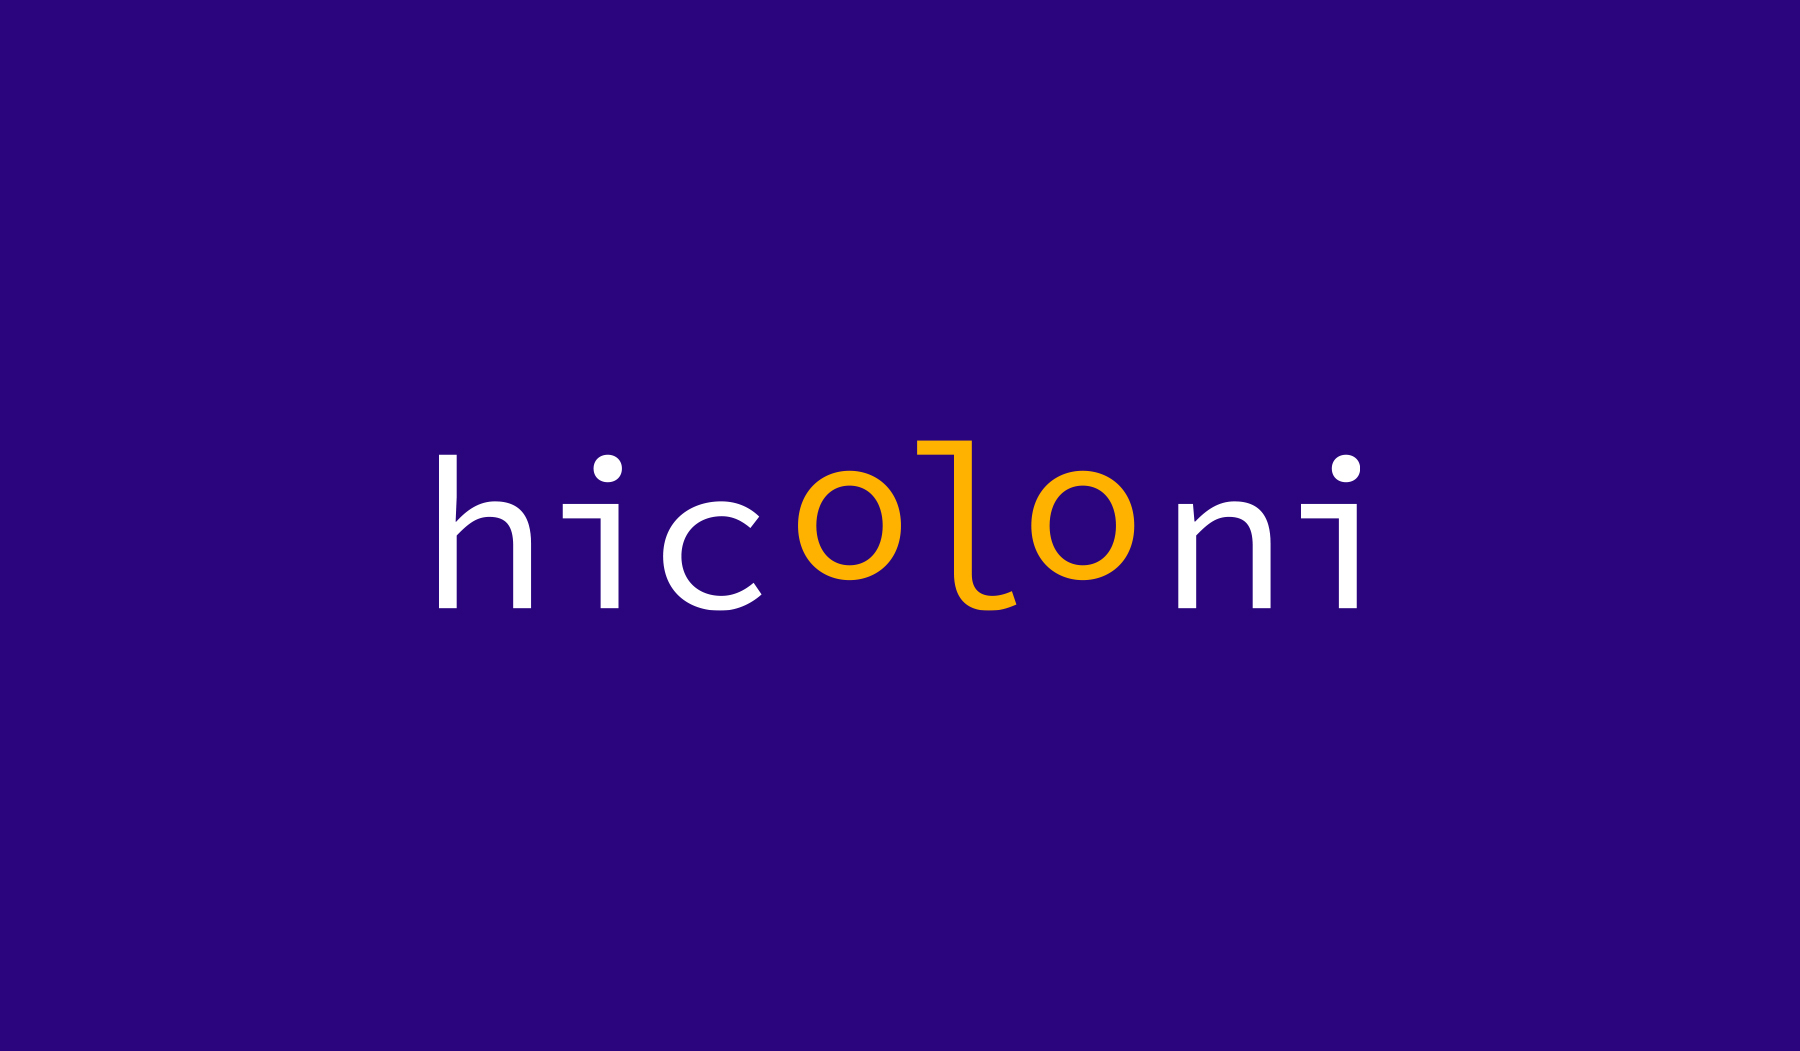 Hicoloni